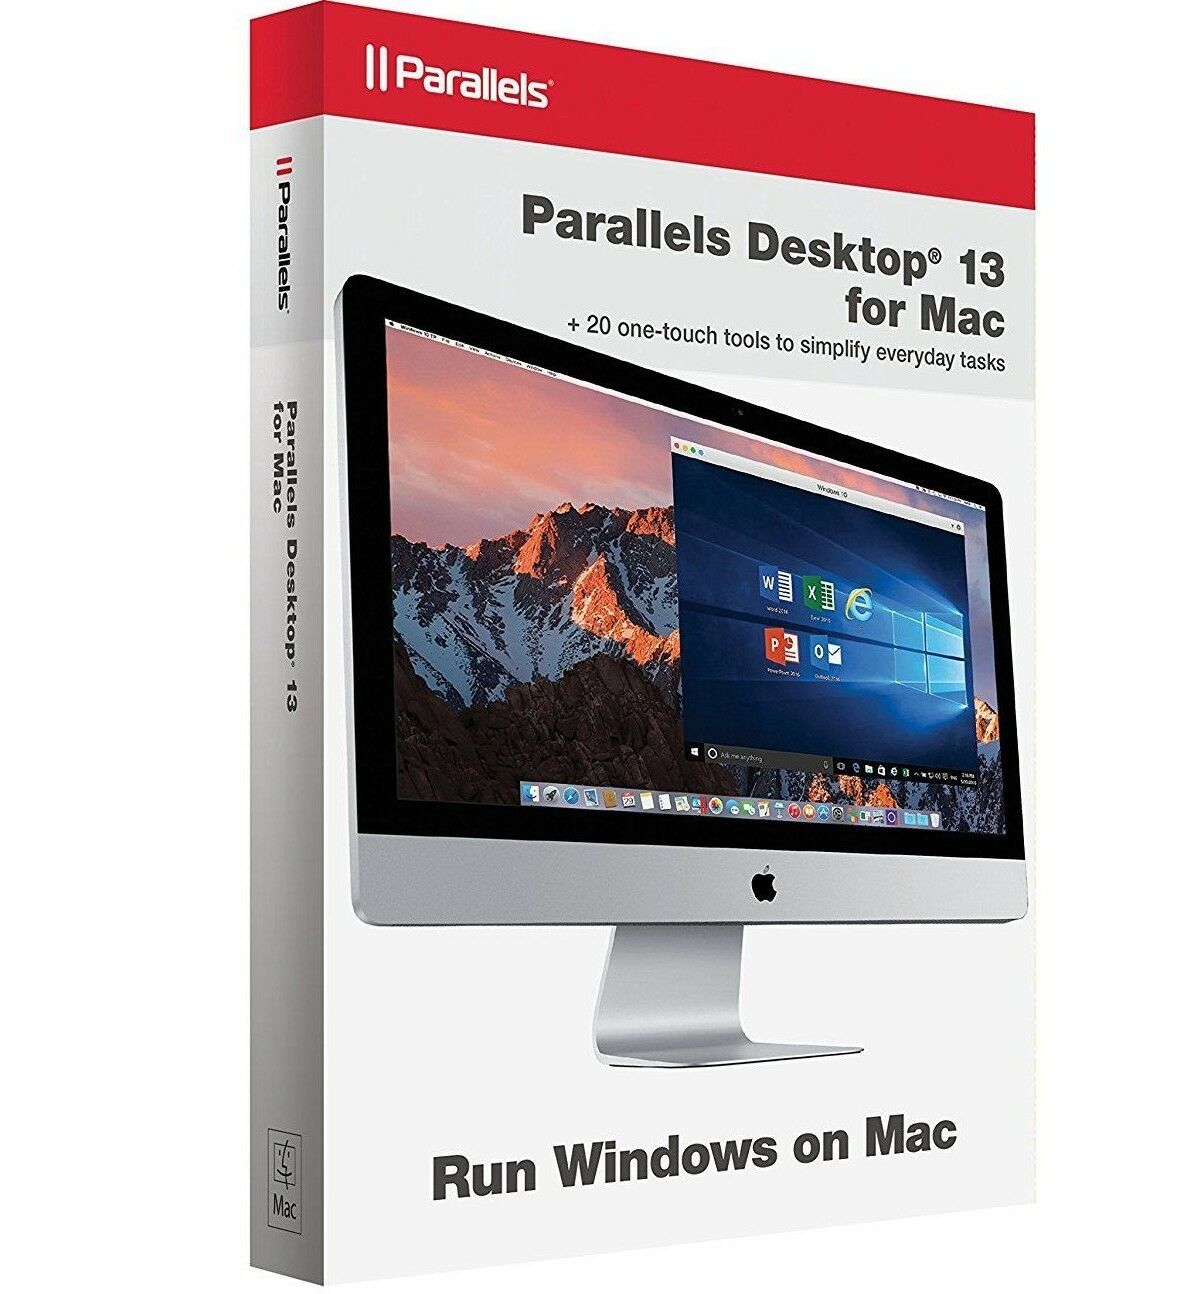 parallels desktop 11 for mac free download full version torrent